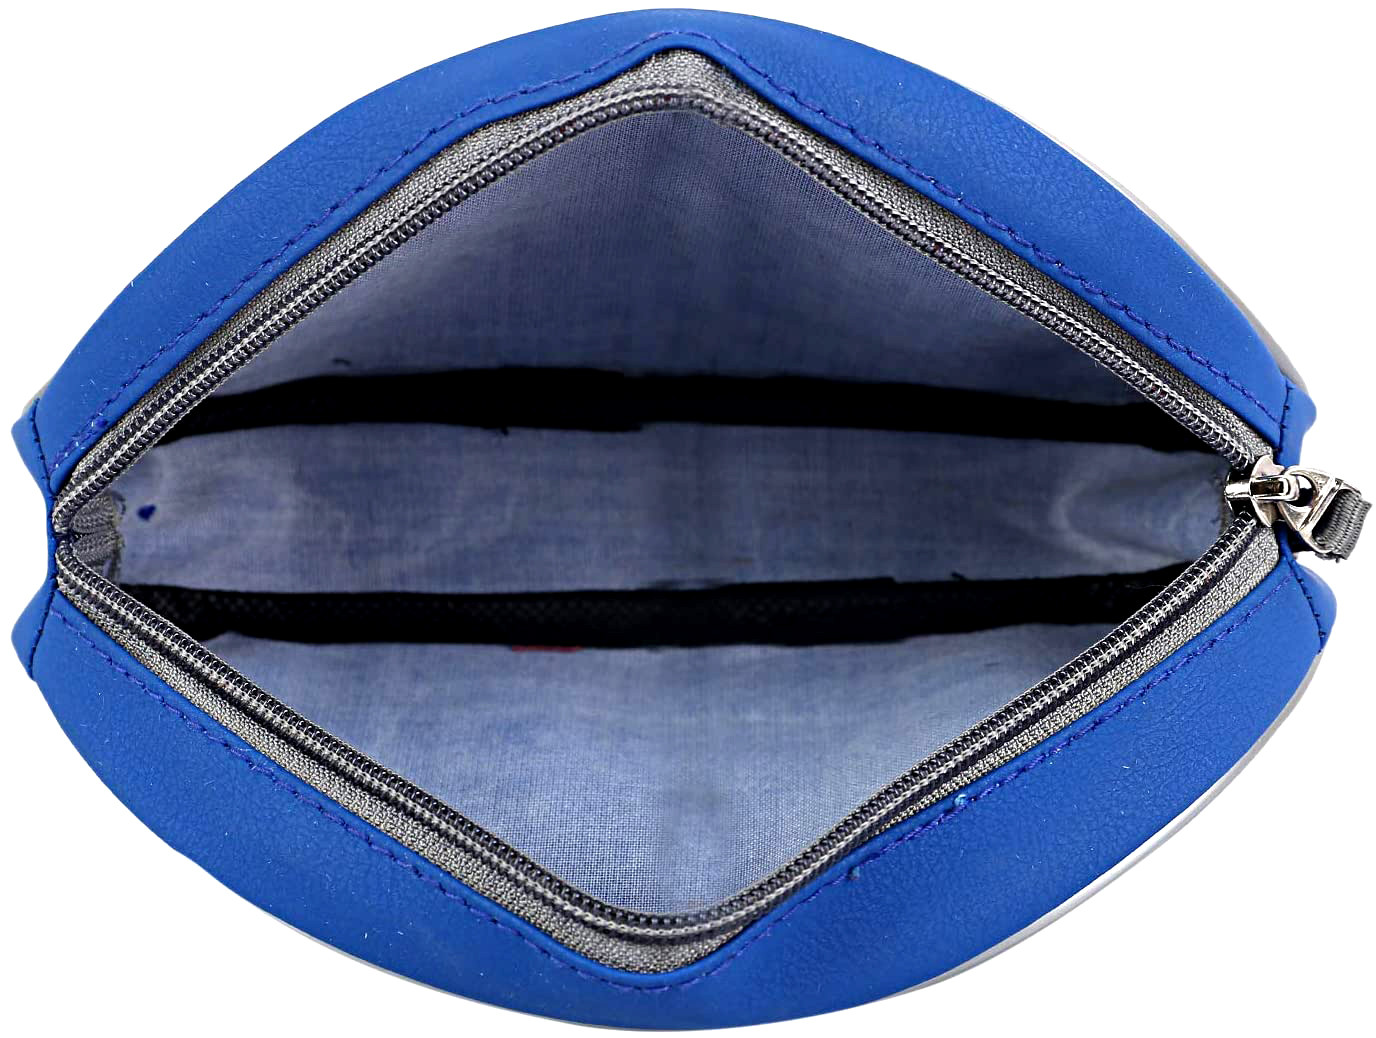 Kuber Industries Travel Toiletry Bag Shaving Dopp Kit for Men-Pack of 2 (Brown & Blue)